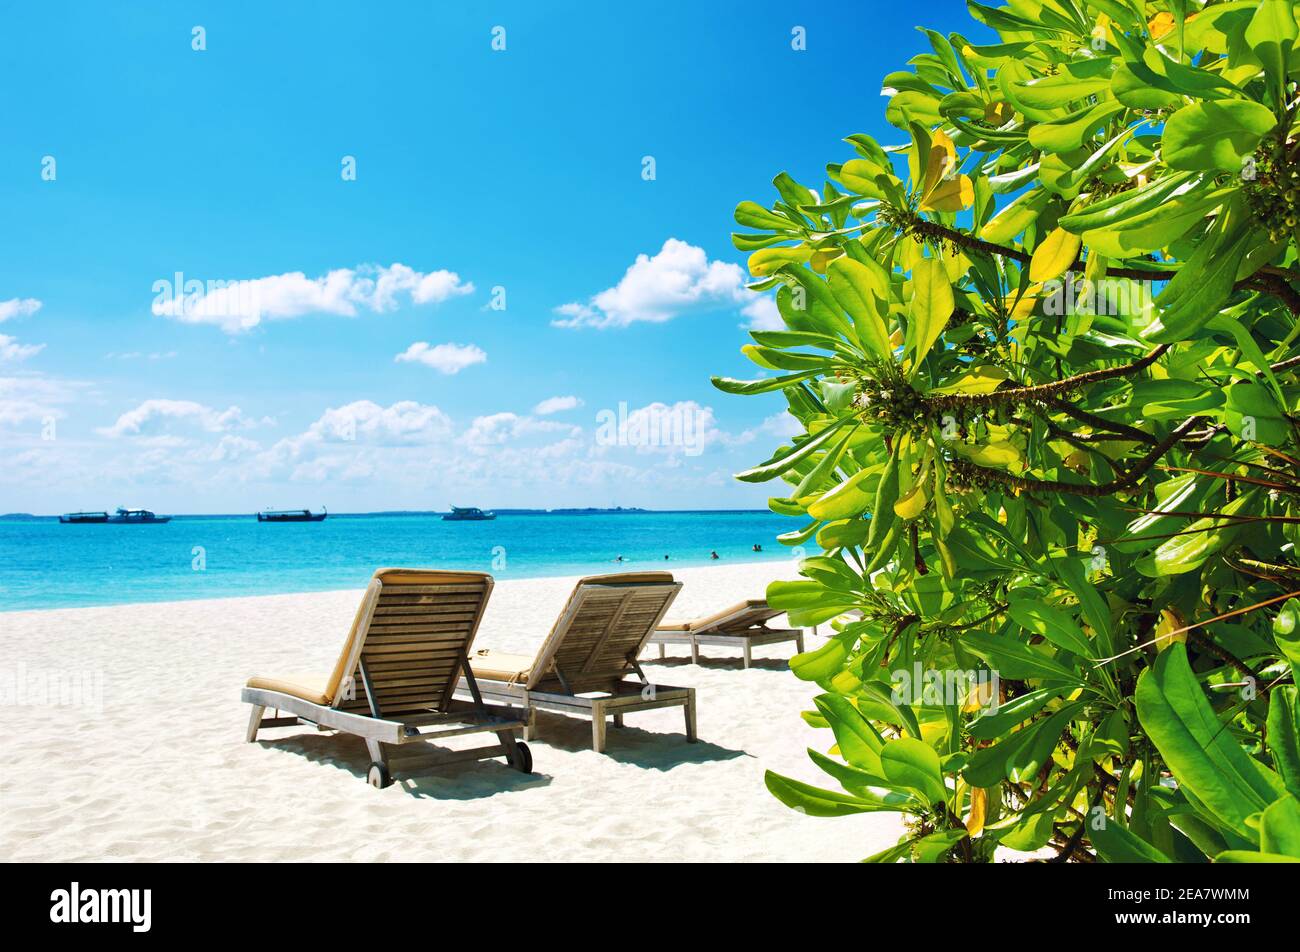 Chaises en bois sur la plage de sable. Ciel bleu et plantes vertes. Paysage de la nature Banque D'Images